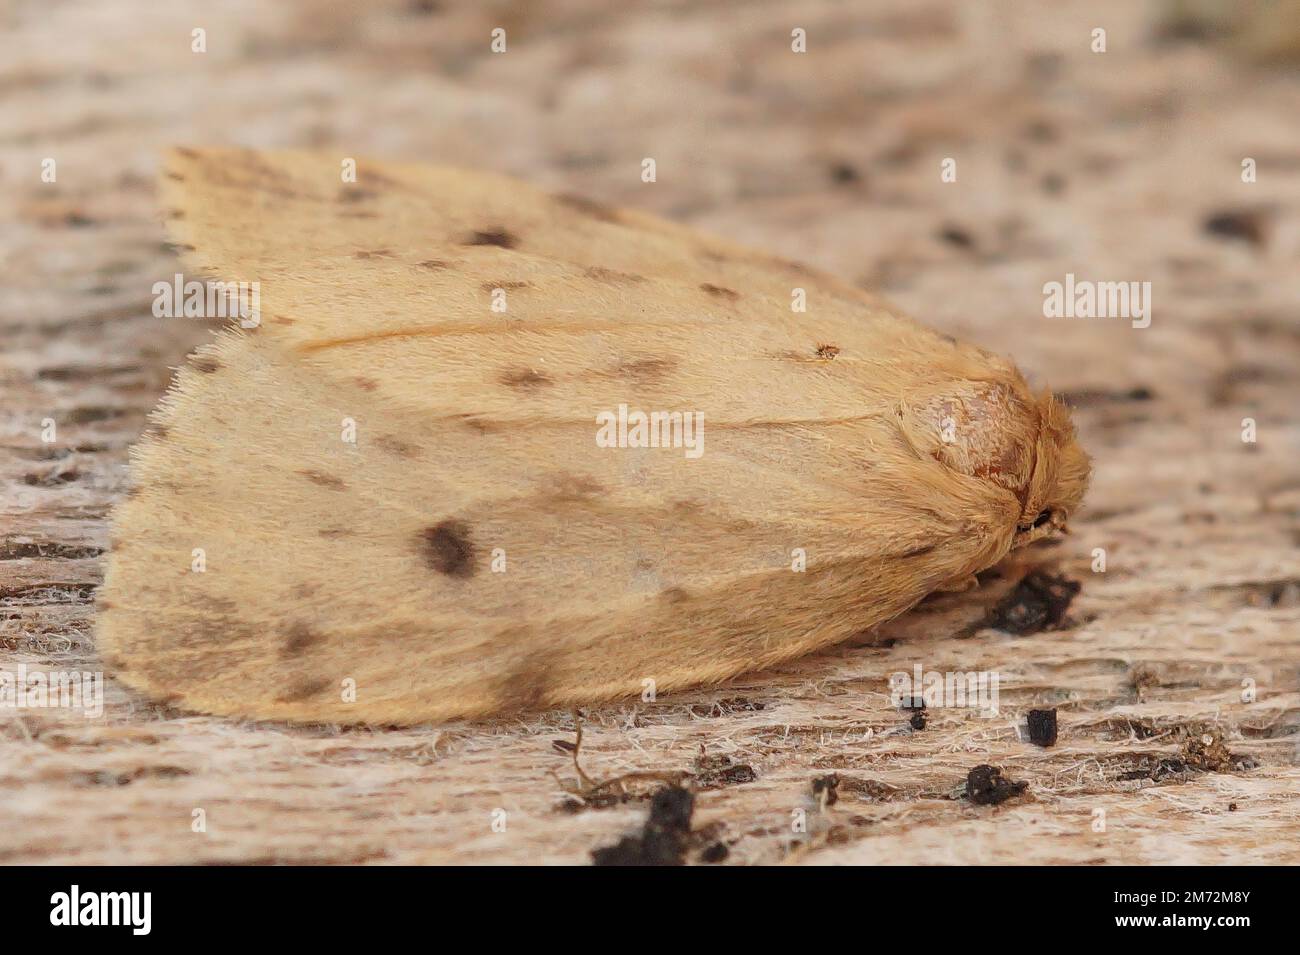 Natürliche Nahaufnahme auf der blassverachtelten, rund geflügelten Moslinmotte Thumatha senex, die auf Holz sitzt Stockfoto